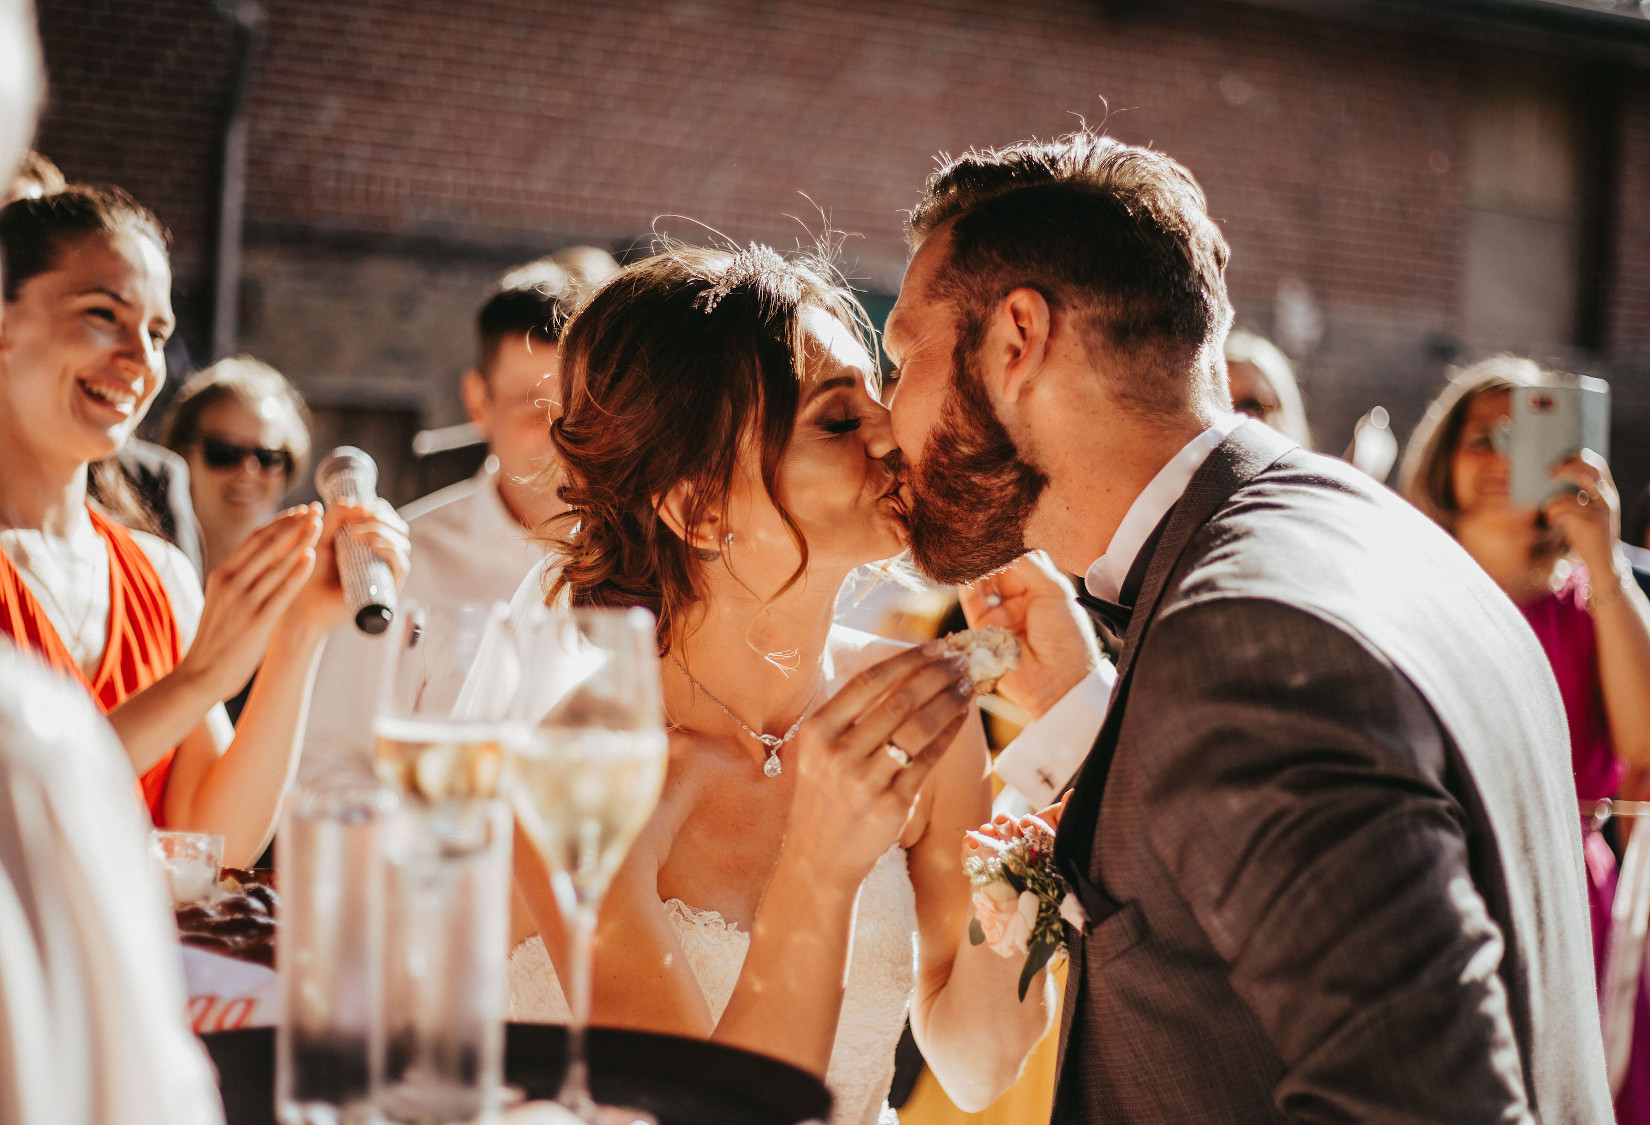 Brot und salz hochzeit gedicht Hochzeit Tipps